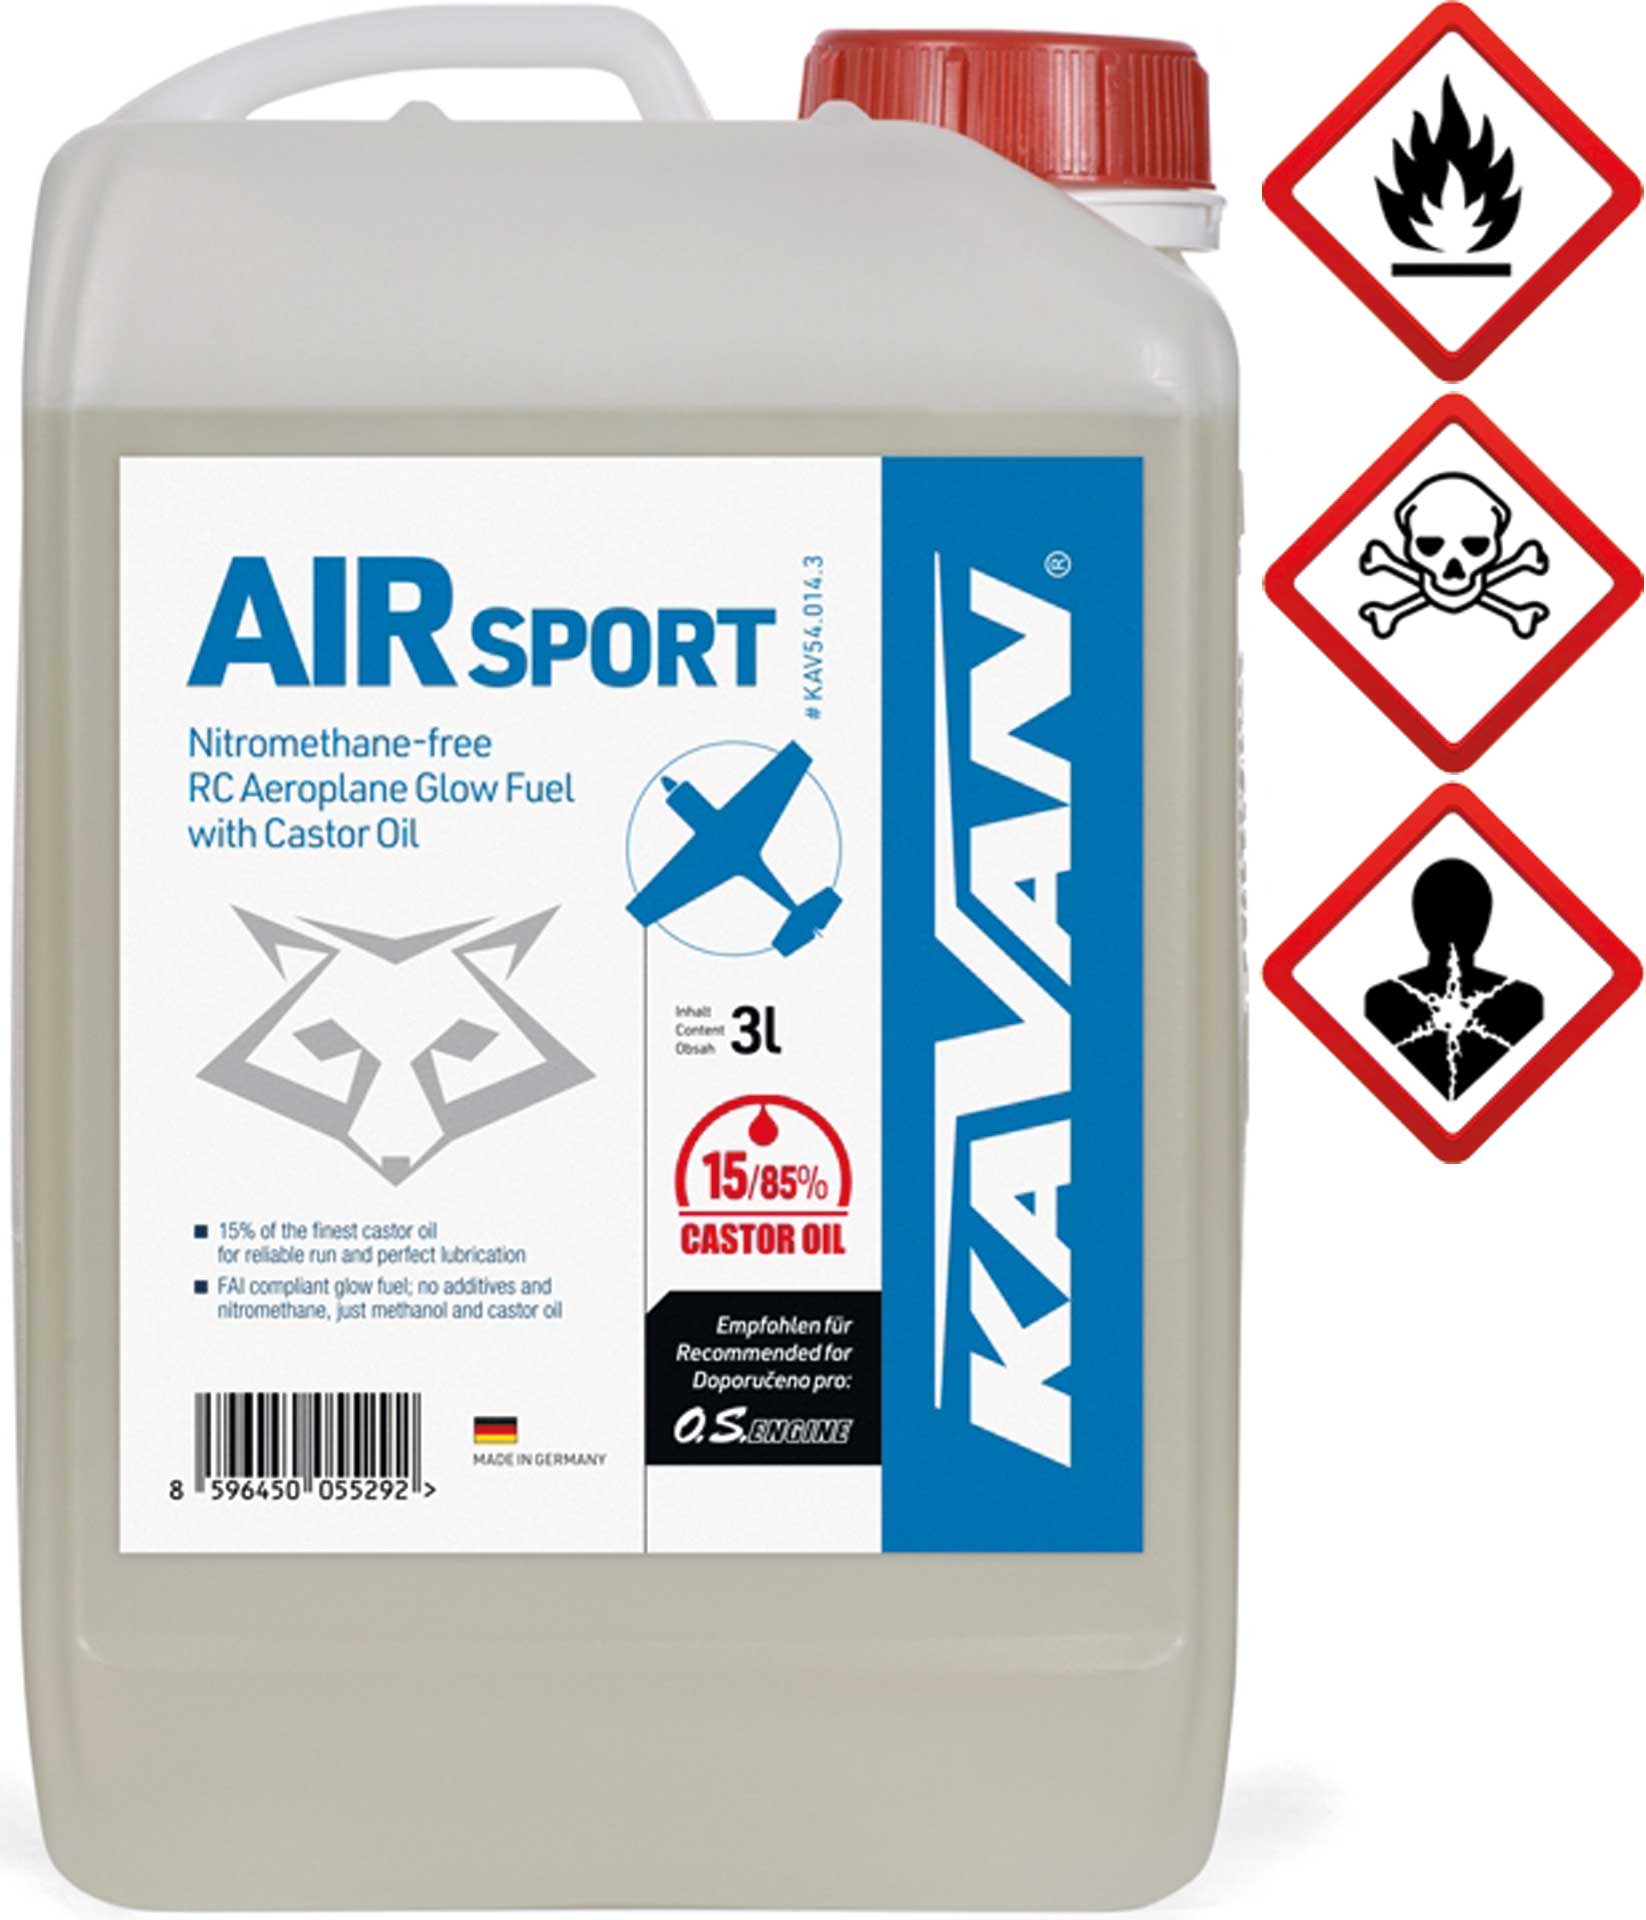 KAVAN Air Sport 15/85 3 Liter Kraftstoff, Sprit, Treibstoff für Glühzünder-Motoren